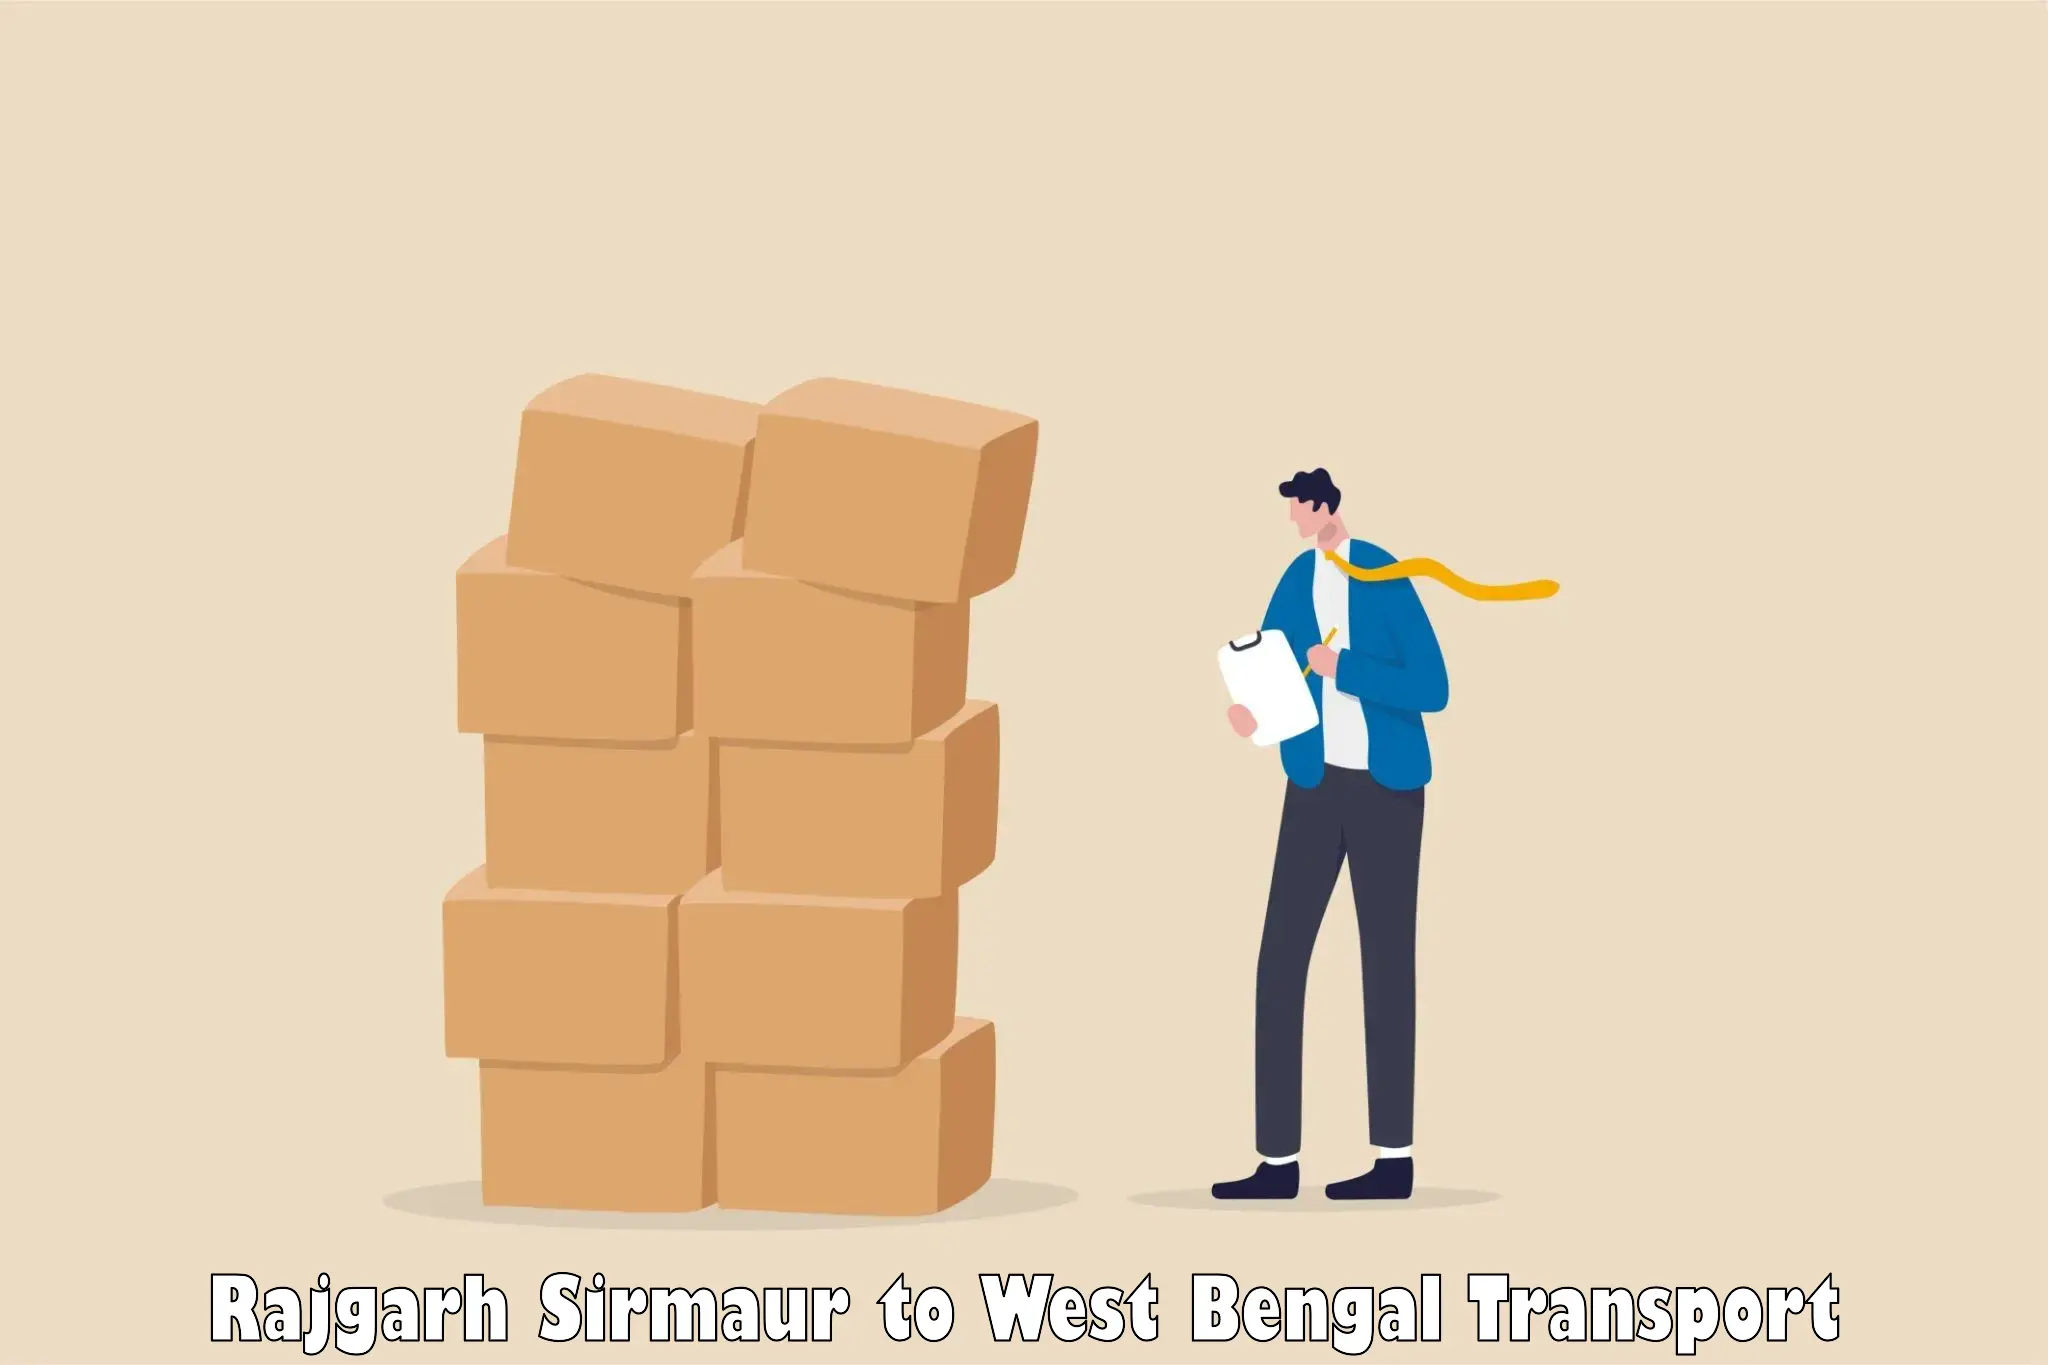 Transport in sharing Rajgarh Sirmaur to West Bengal